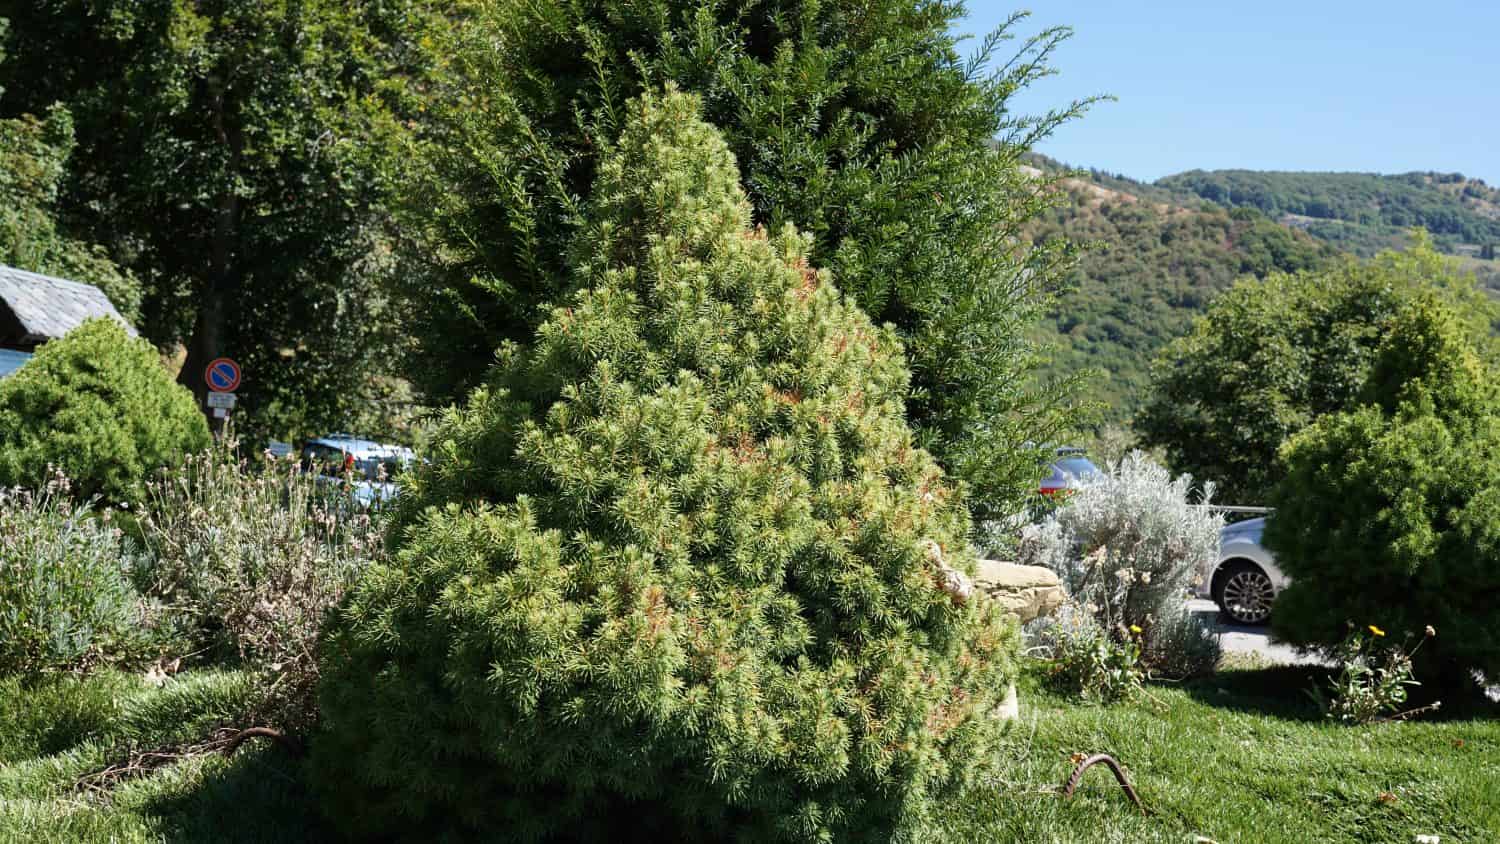 Abete bianco (Picea glauca), nel giardino.  Pianta decorativa nel parco pubblico.  Stagione estiva